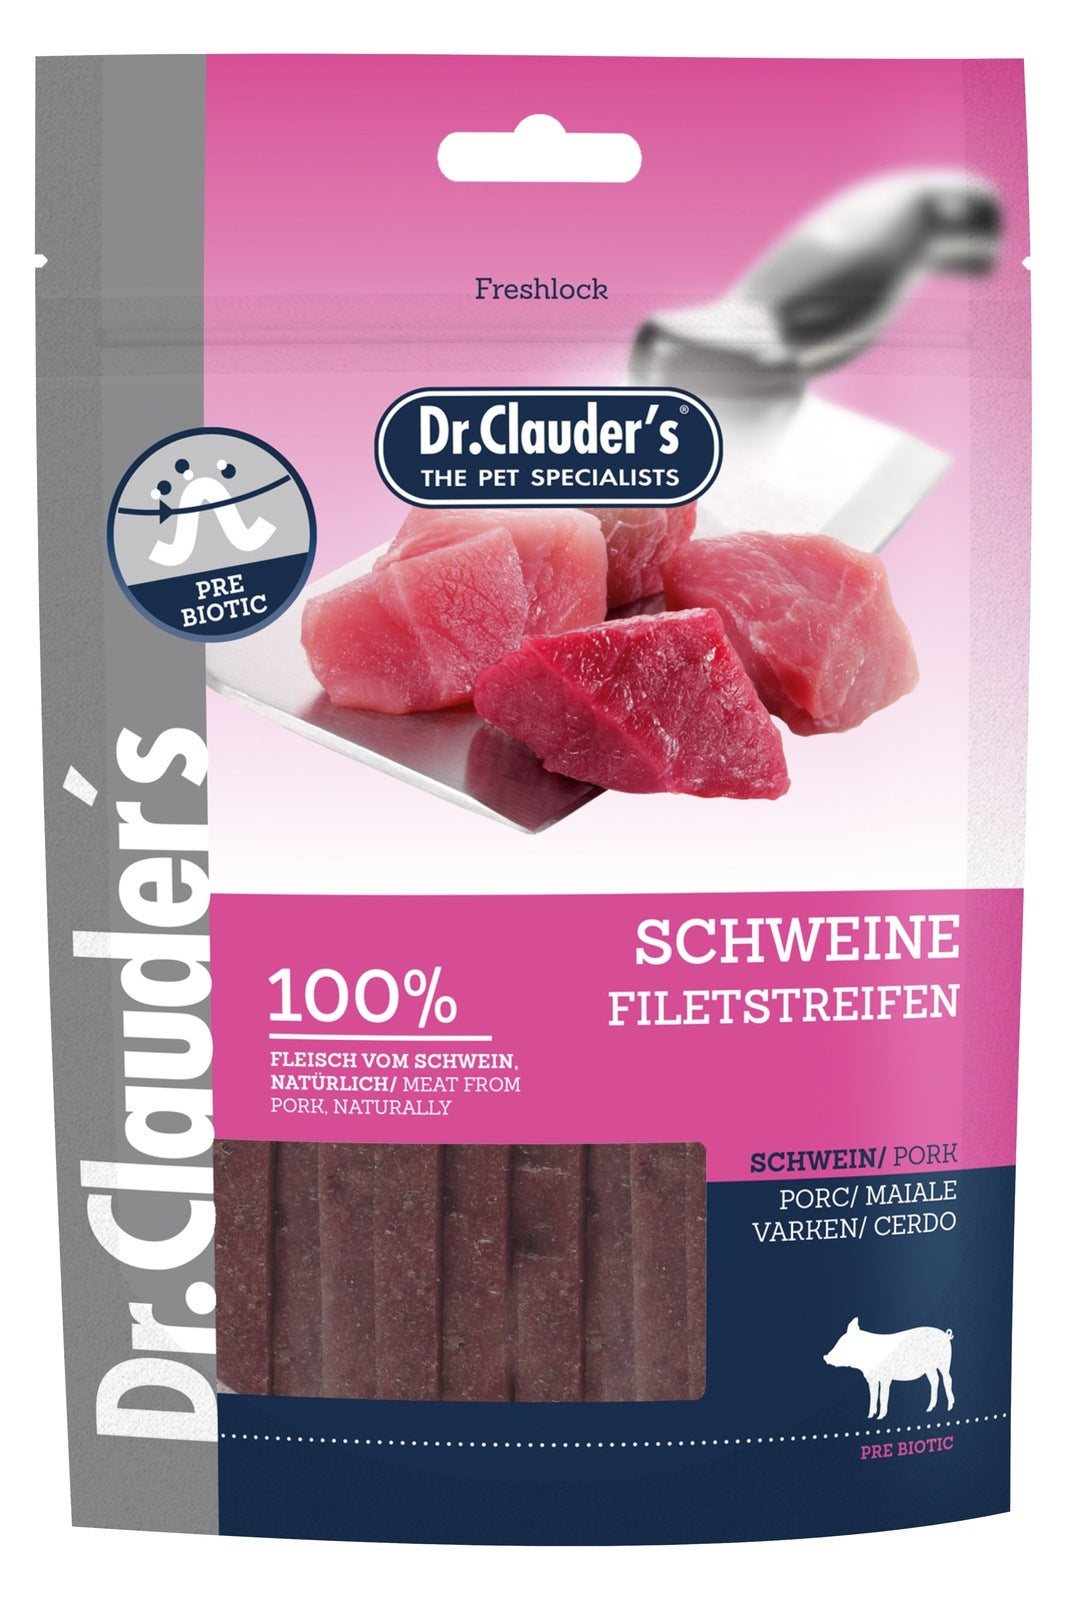 Artikel mit dem Namen Dr.Clauder's Premium Schwein Filetstreifen im Shop von zoo.de , dem Onlineshop für nachhaltiges Hundefutter und Katzenfutter.